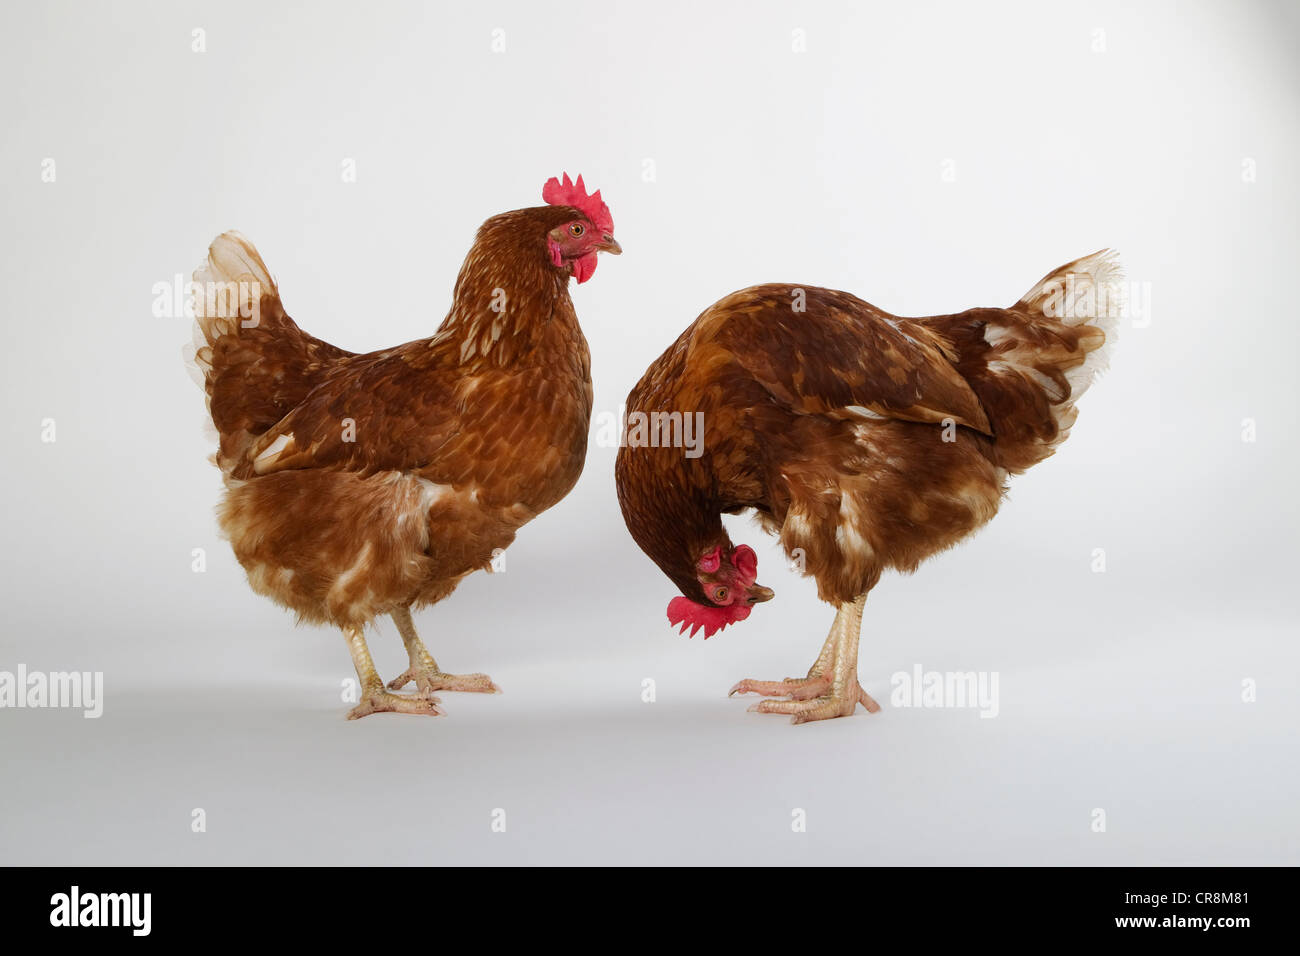 Dos gallinas, Foto de estudio Foto de stock